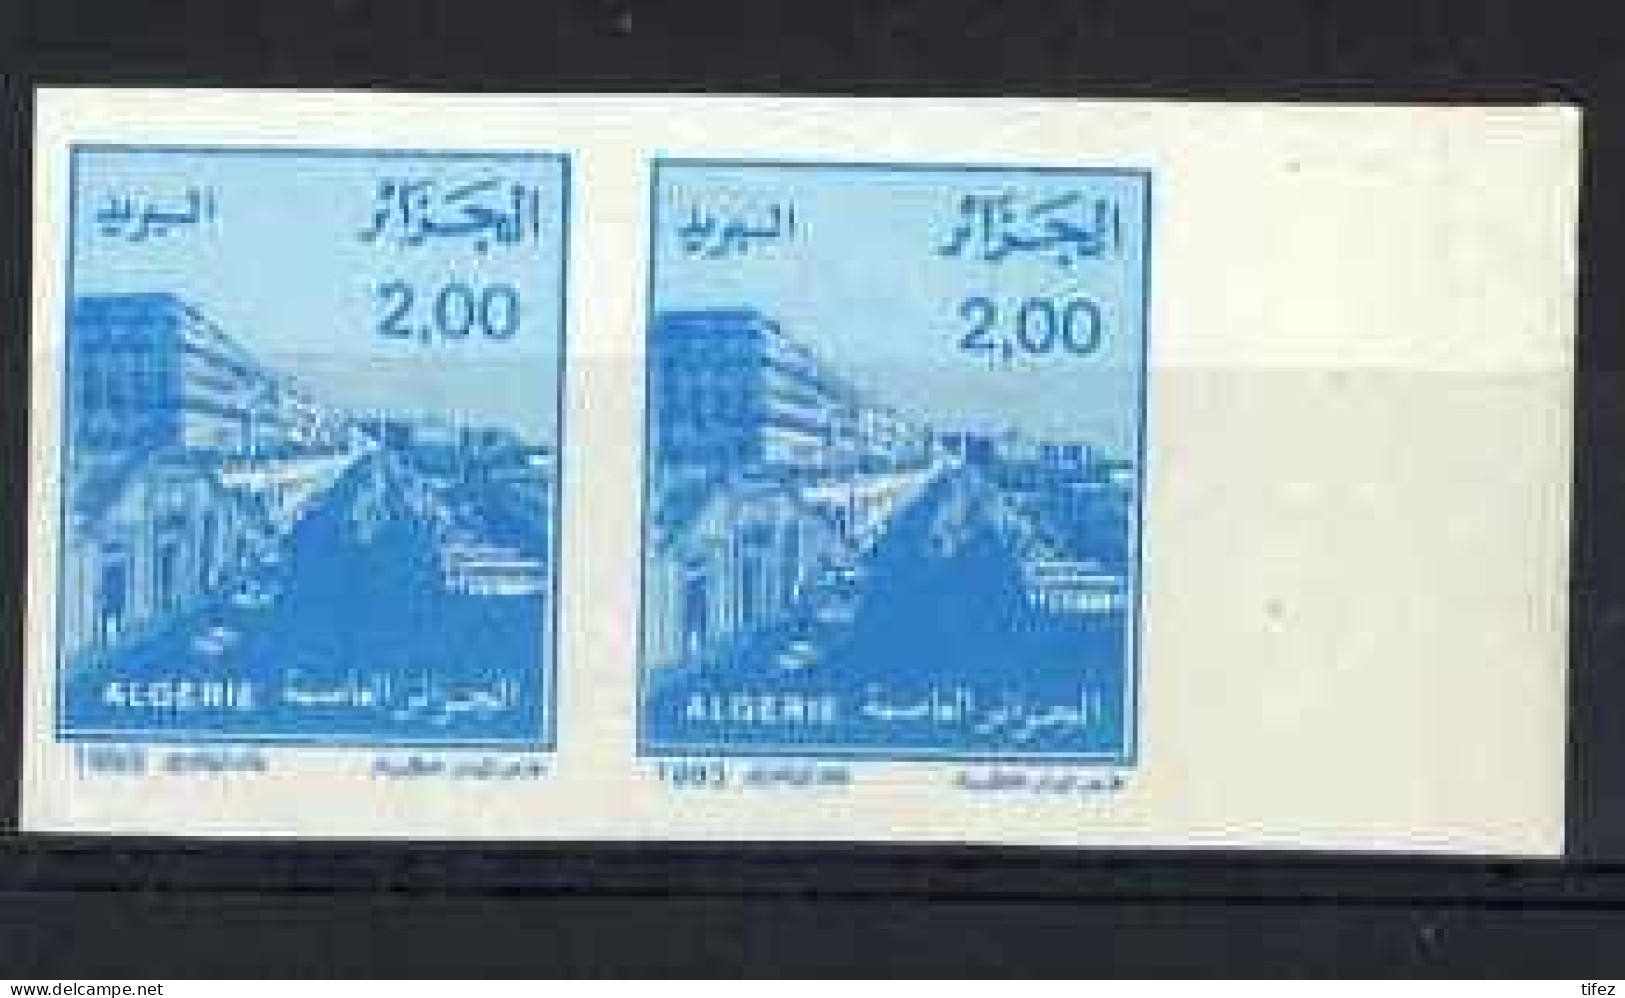 Non-dentelé/Année 1993-N°1049 Neuf**MNH/imperforate : Vue D'Alger (2 D. Bleu) : Paire Horizontale - Algerien (1962-...)